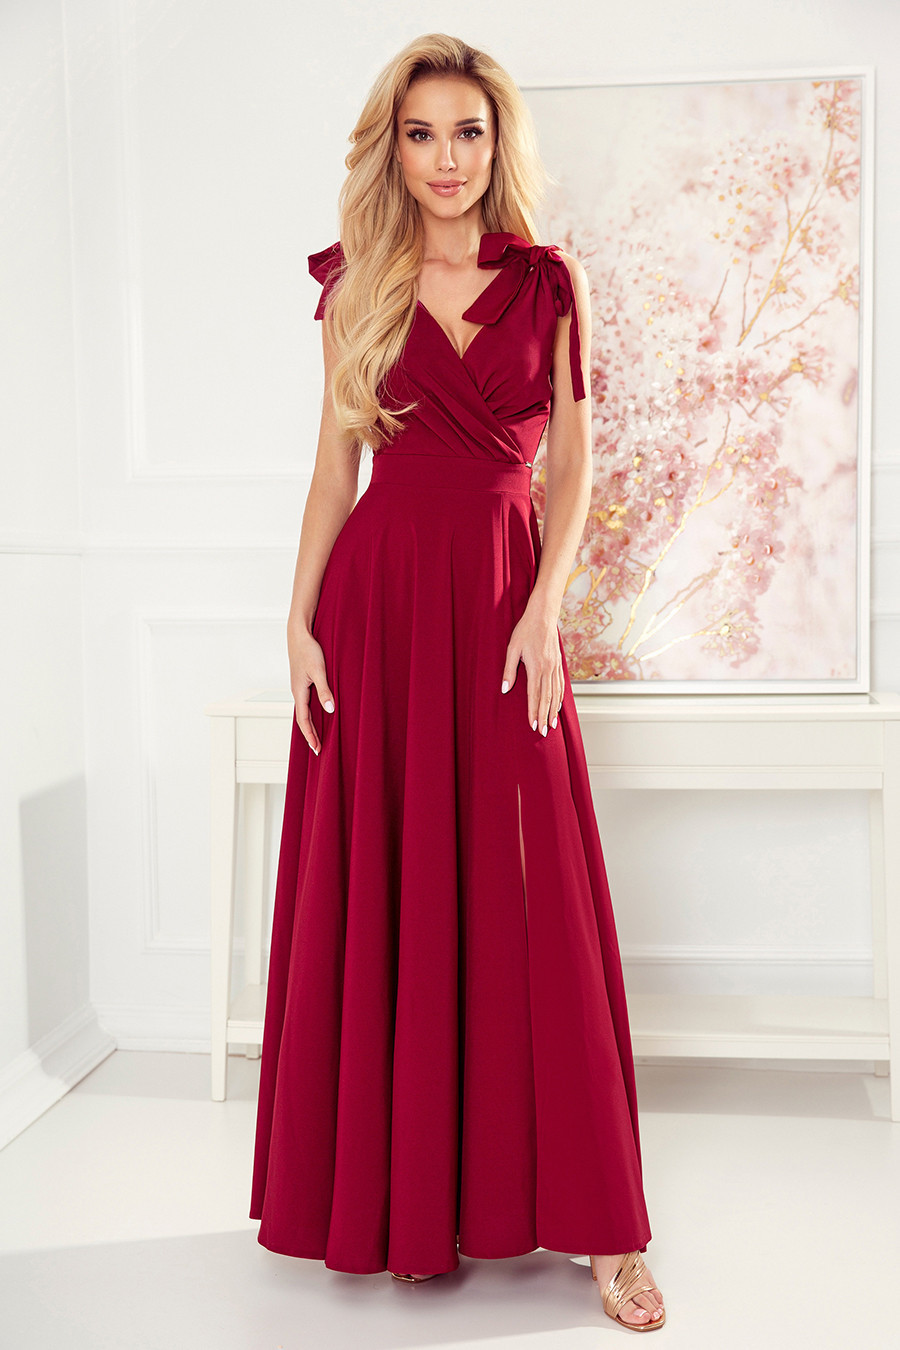 ELENA - Dlouhé dámské šaty ve vínové bordó barvě s výstřihem a zavazováním na ramenou 405-1 M